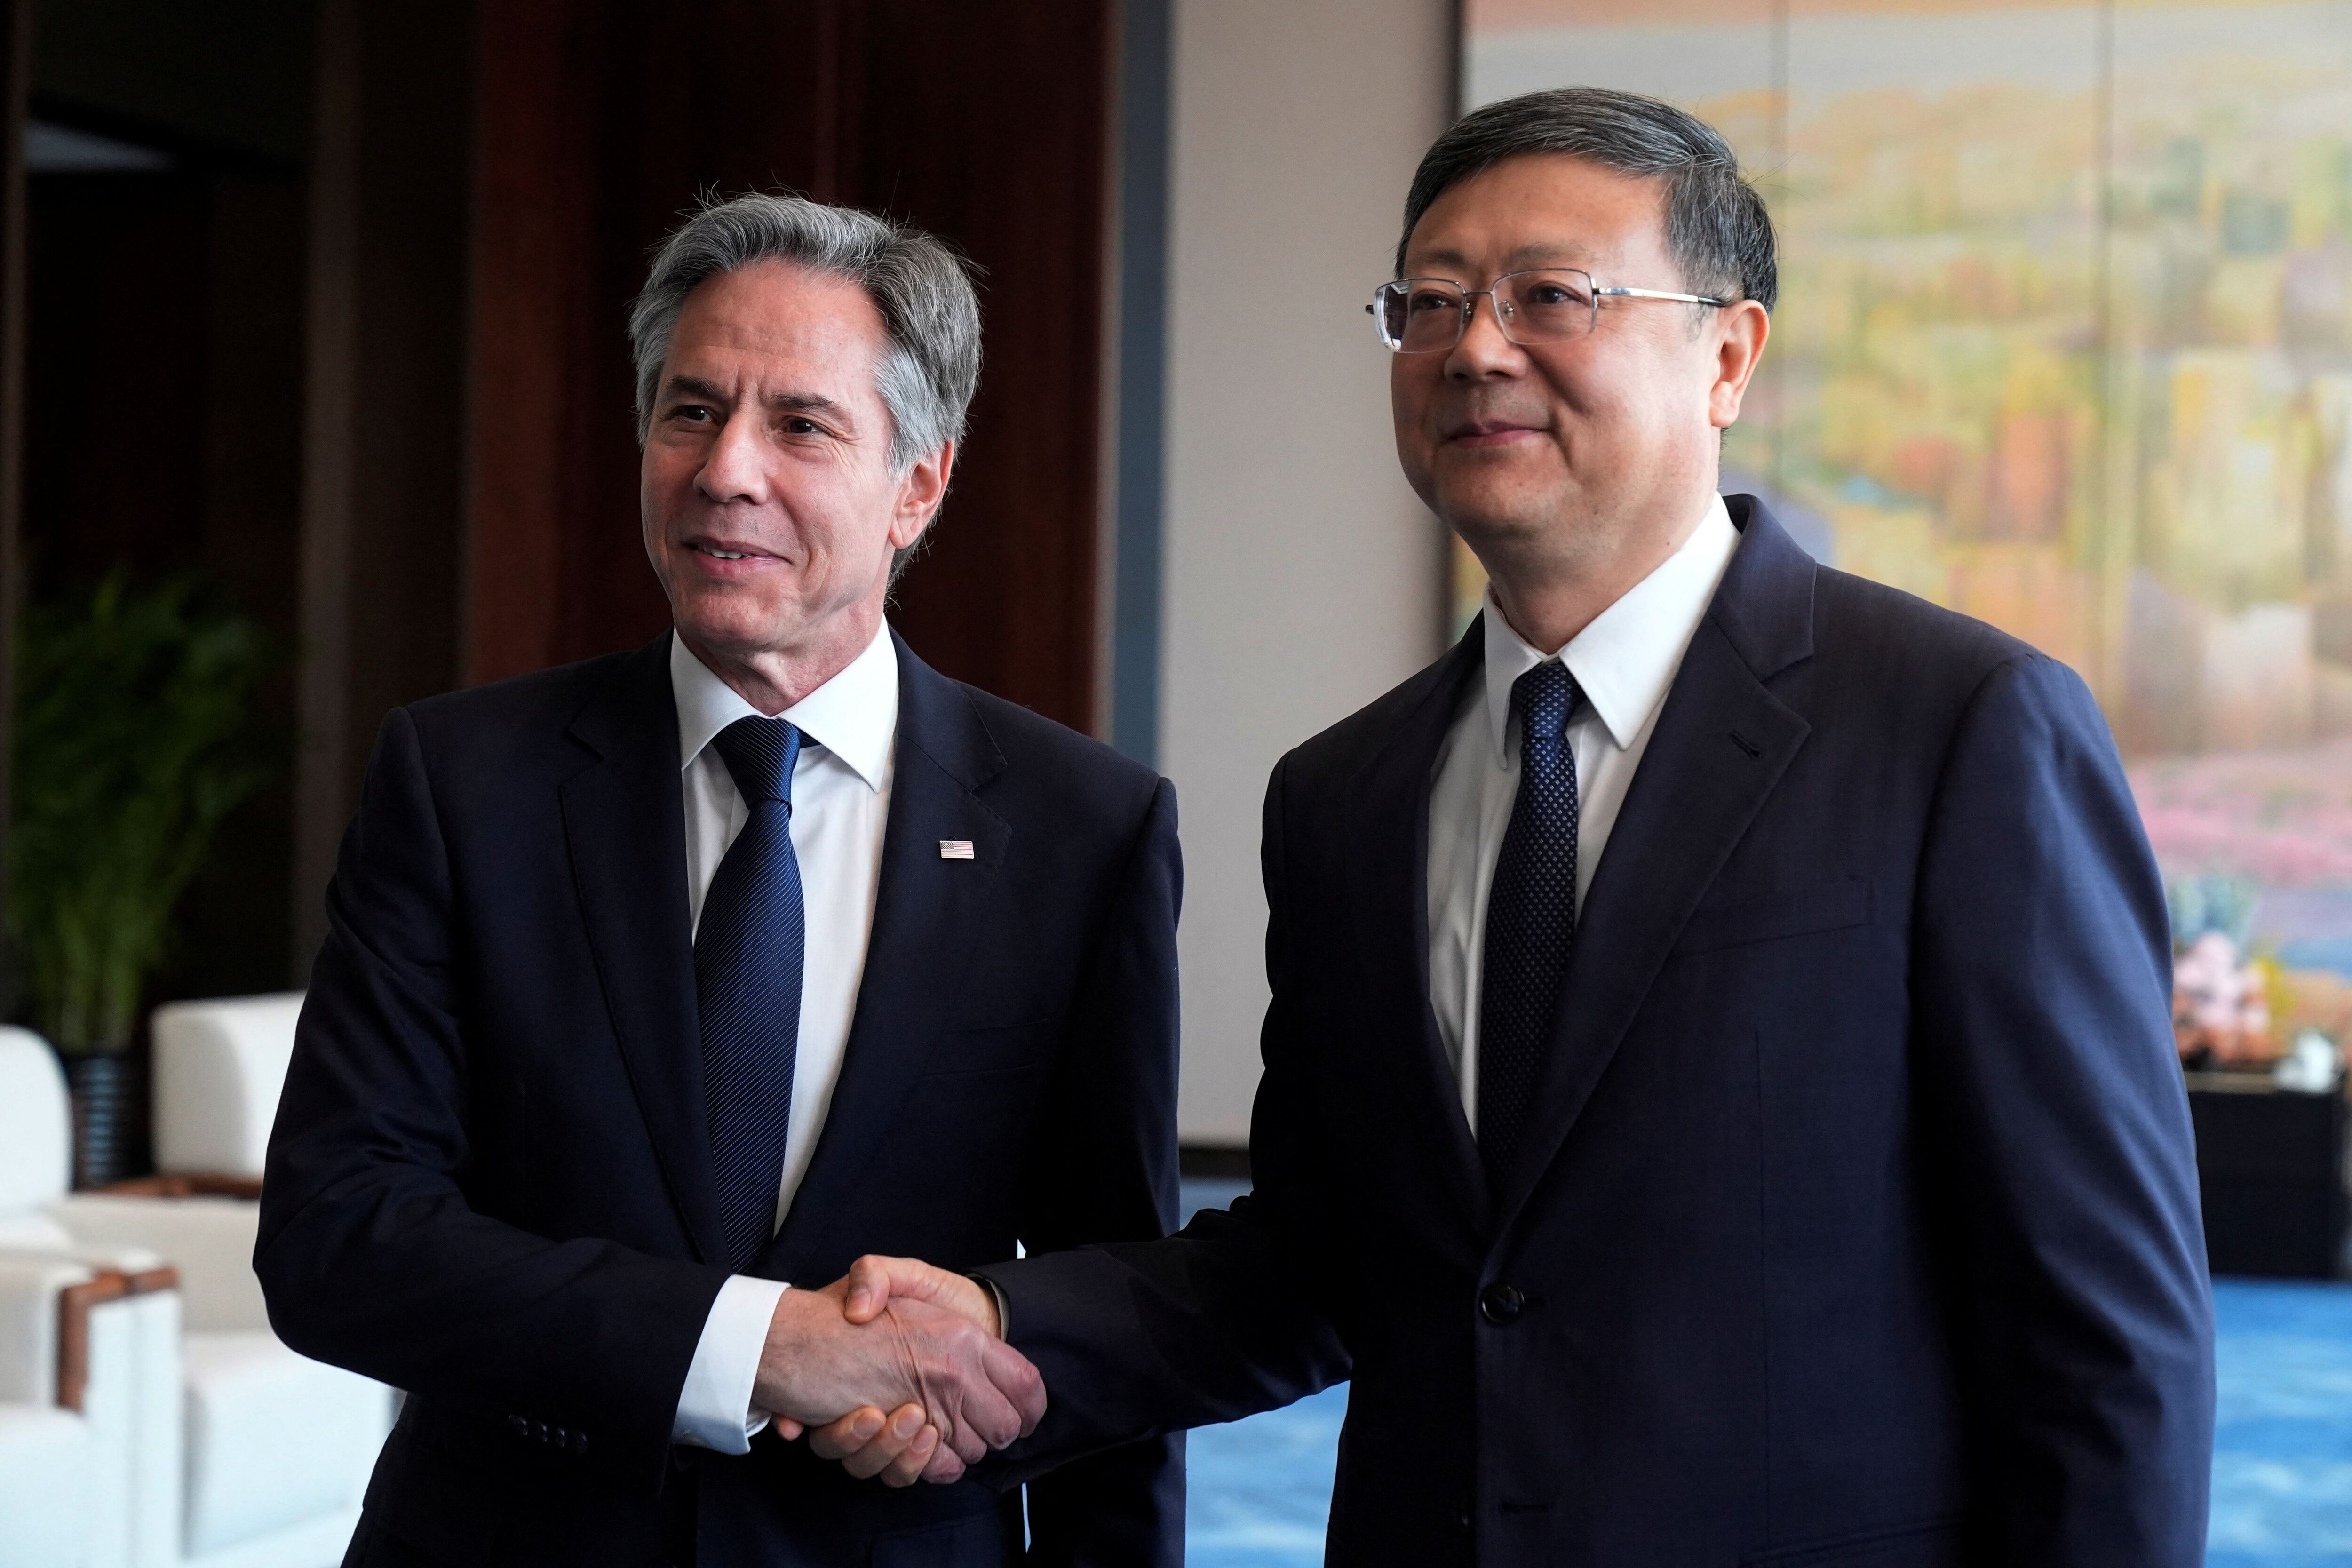 El secretario de Estado llegó a Shanghái con la misión de aumentar la presión sobre el régimen de Xi Jinping en distintos asuntos, como su cercanía con Rusia (Mark Schiefelbein/REUTERS)